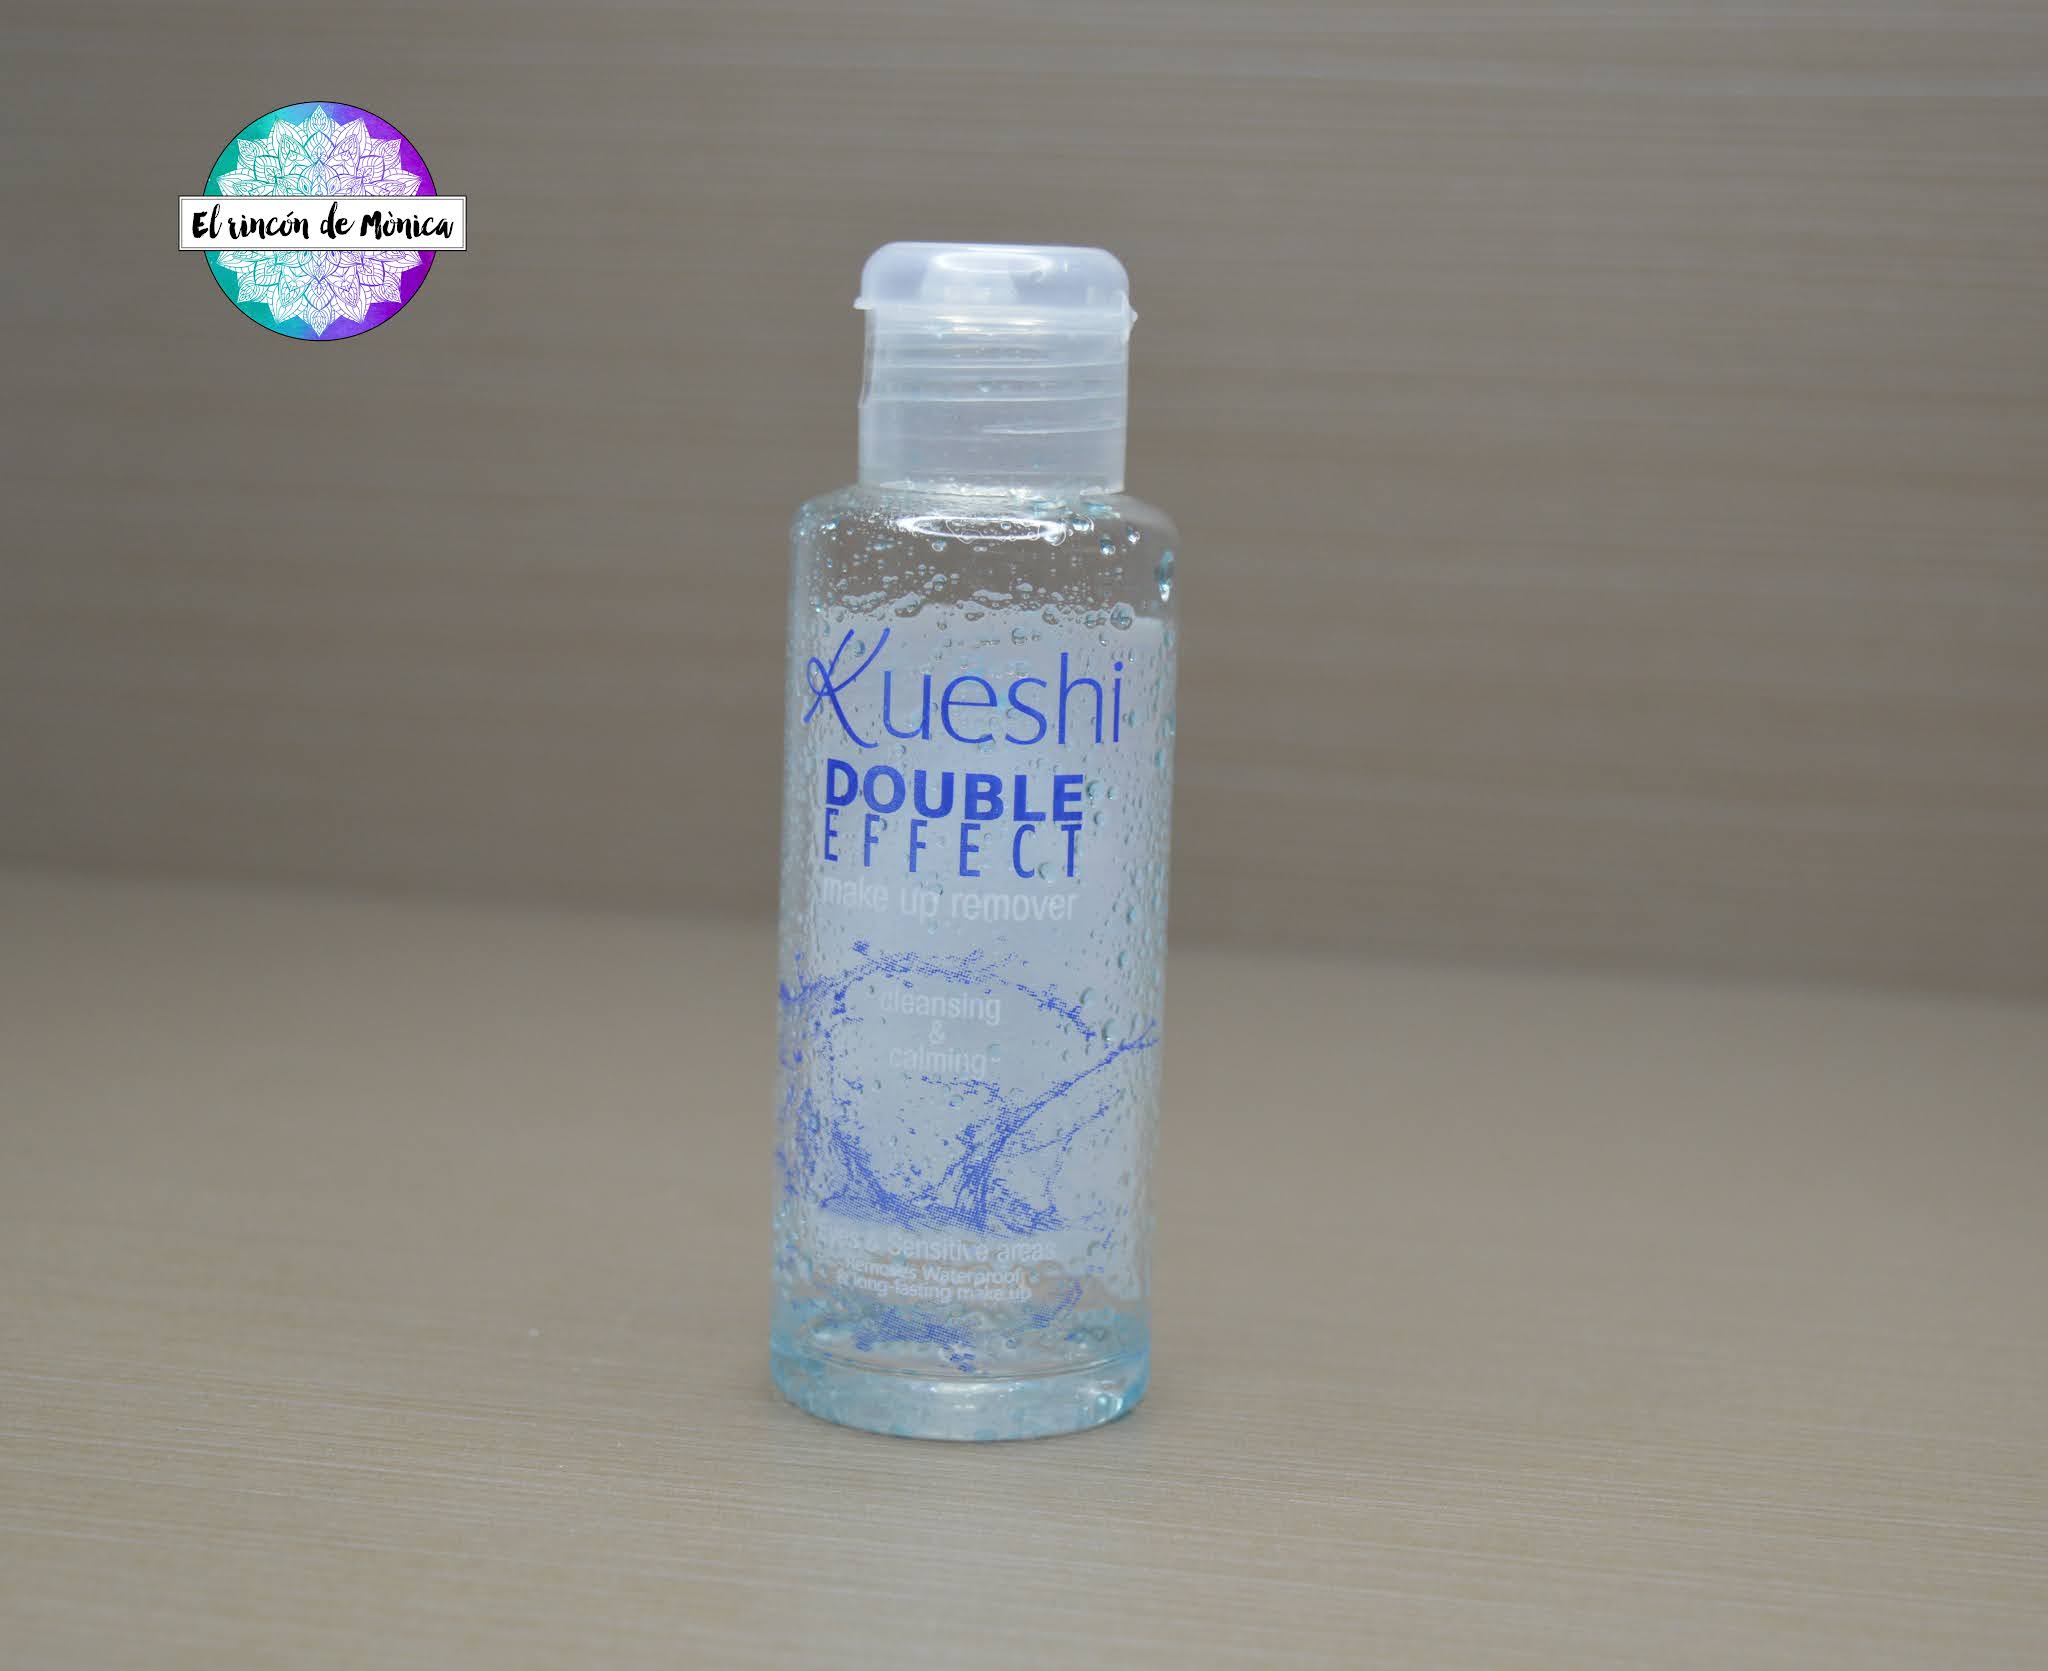 Kueshi - Desmaquillante bifásico para ojos y labios